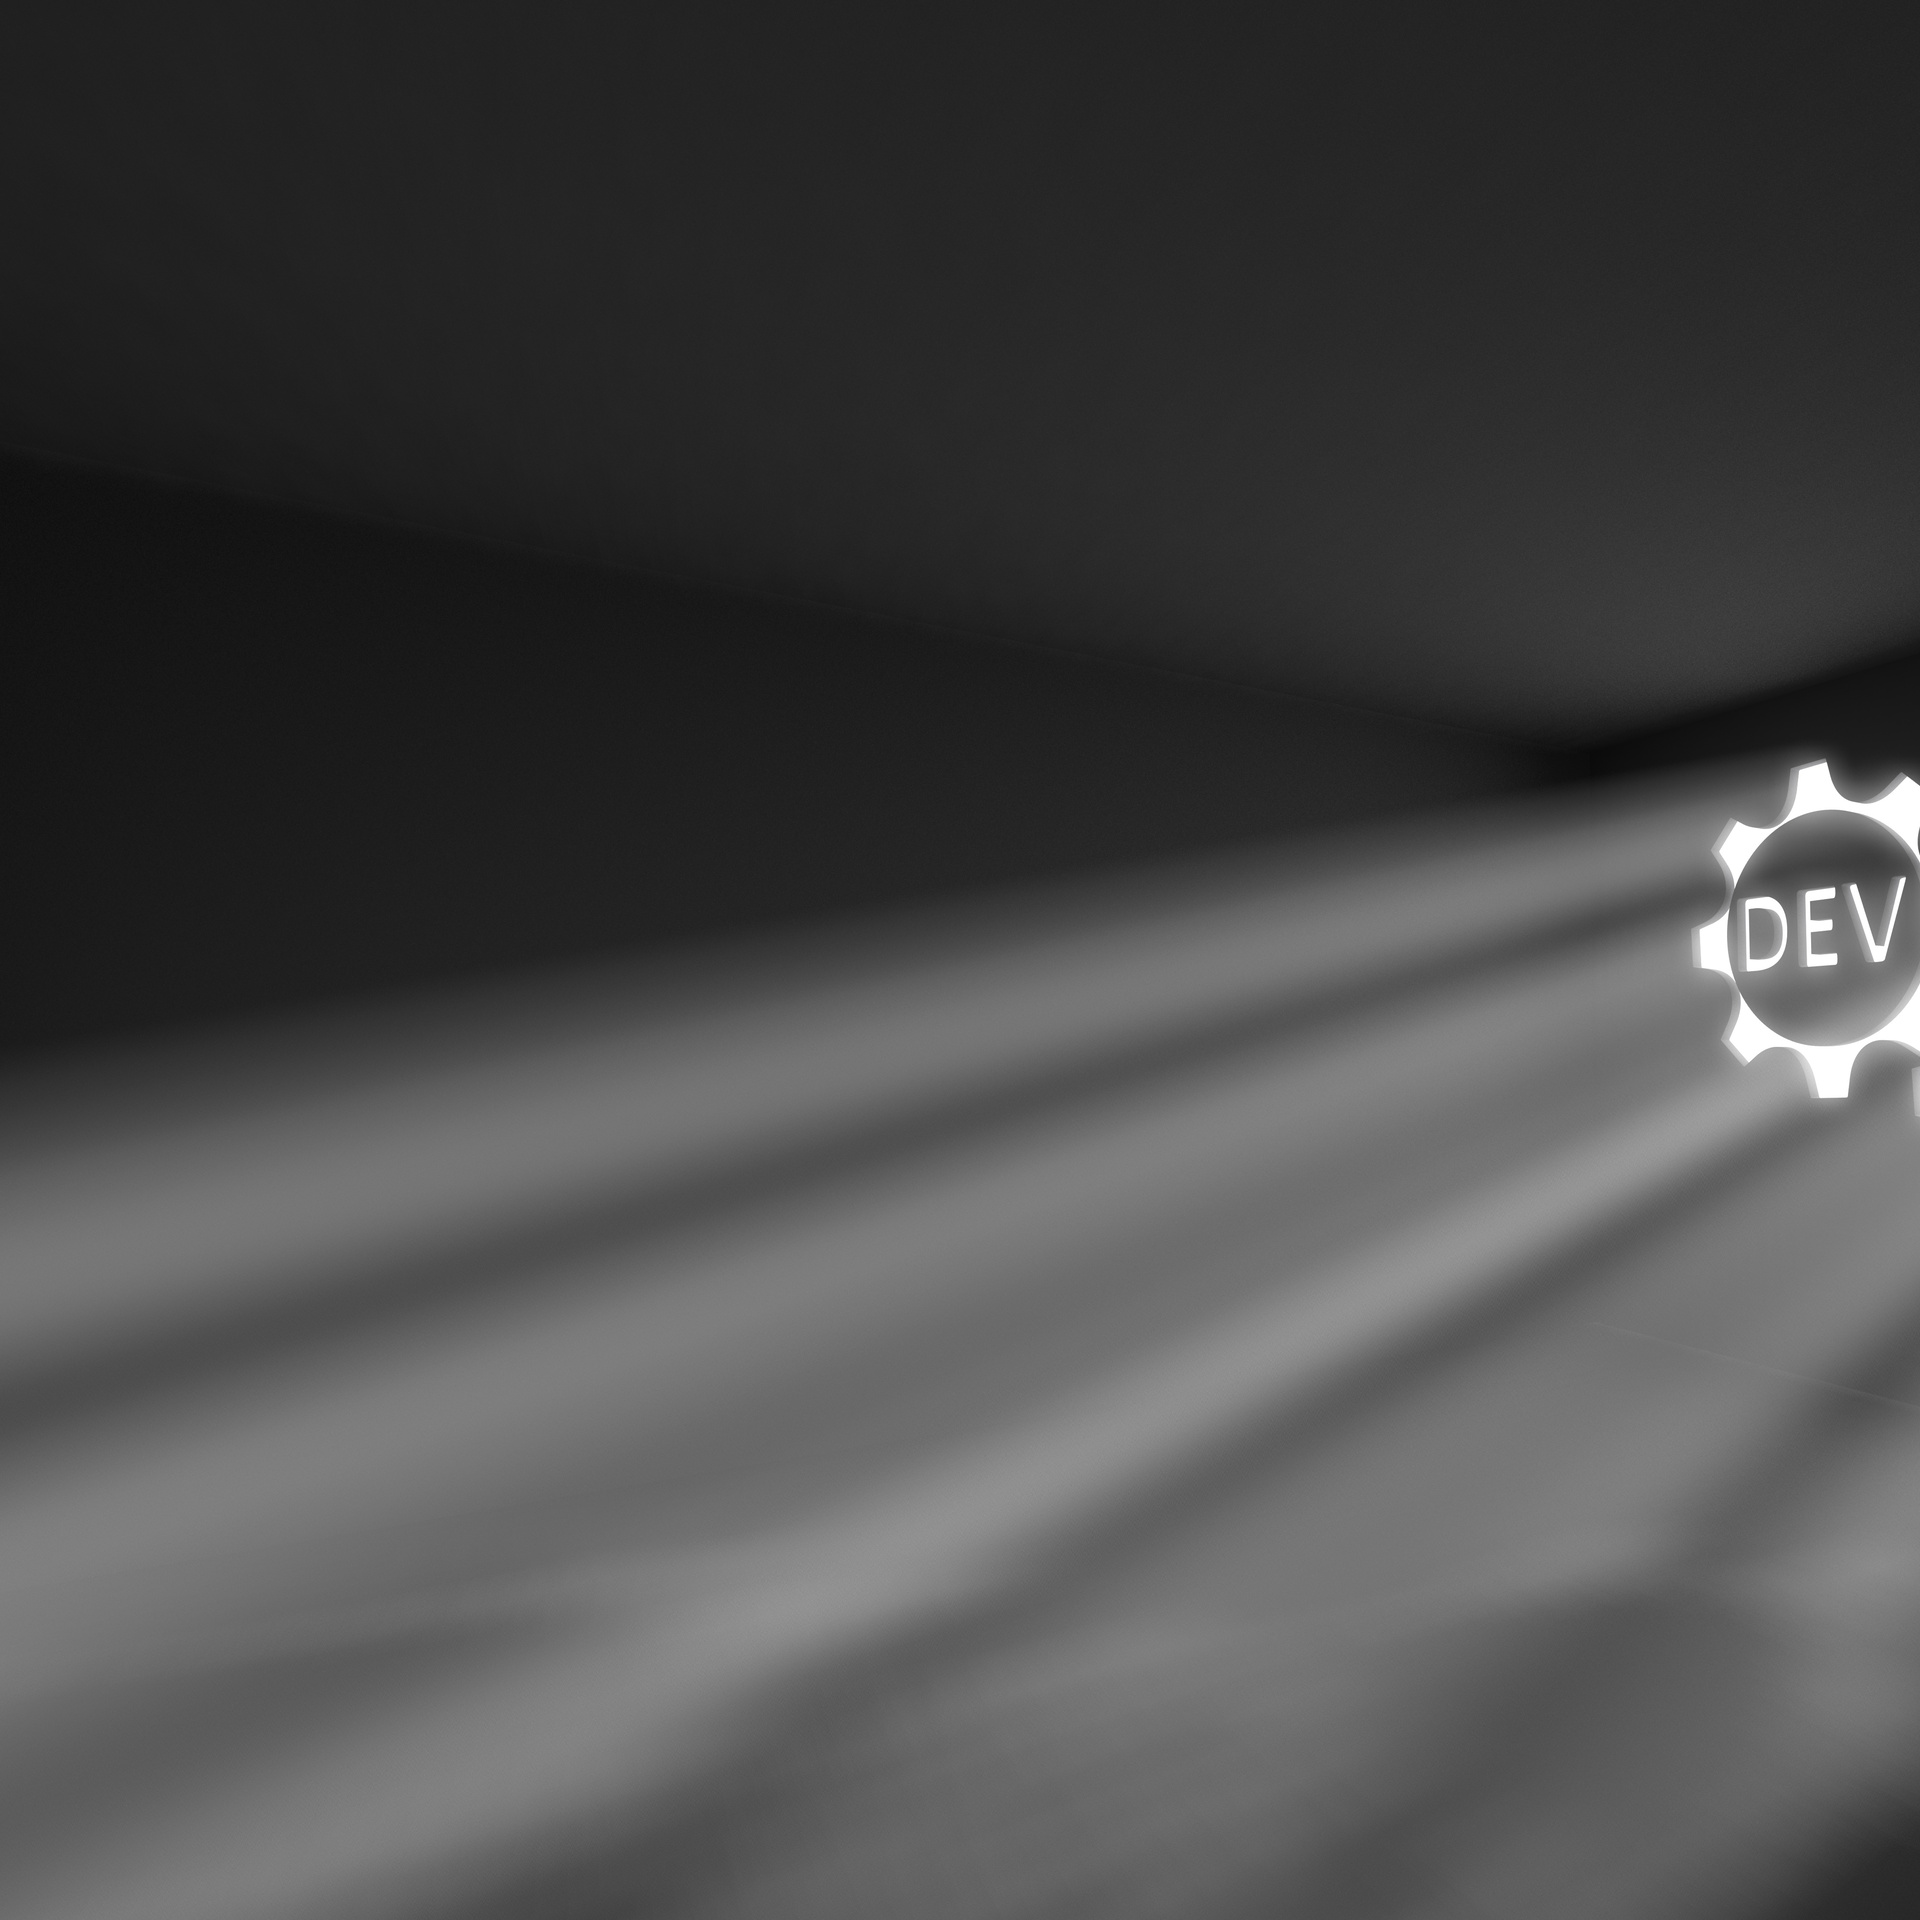 DevOps rays volume light concept 3d illustration